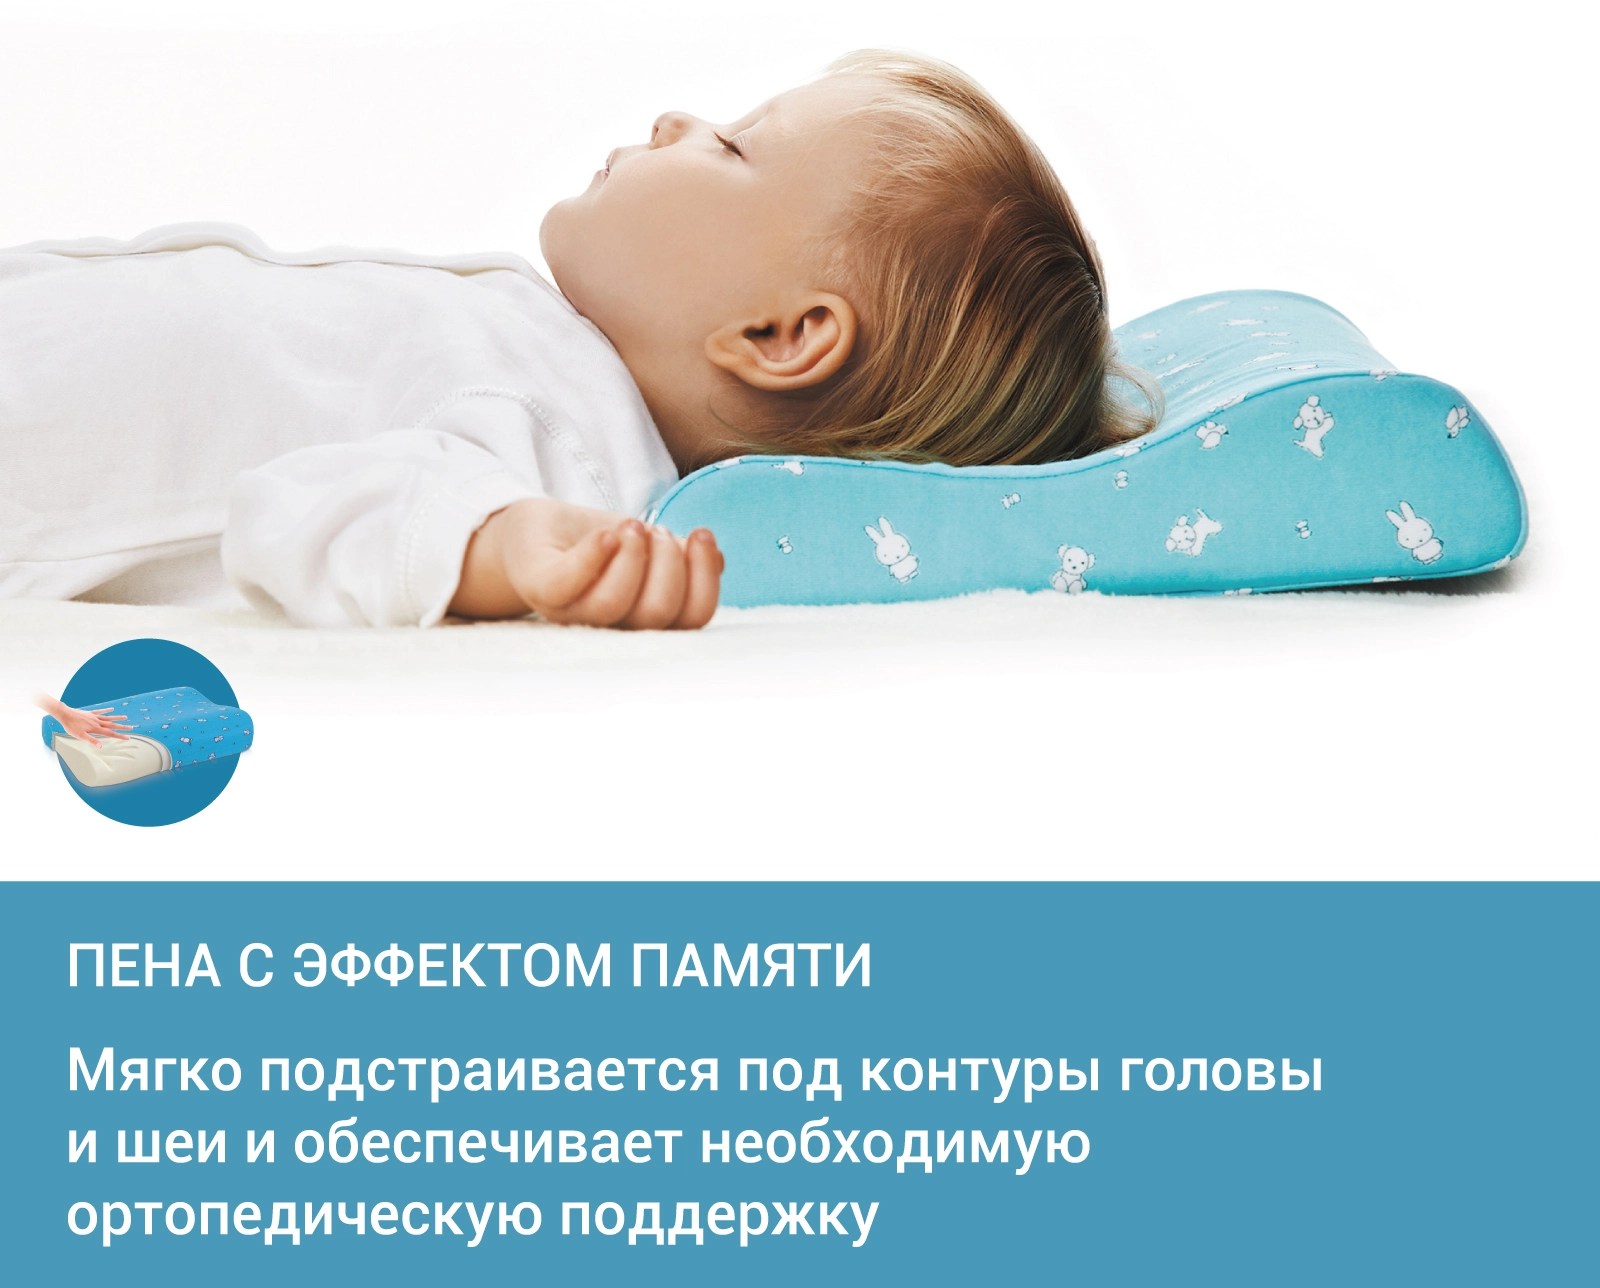 Детская ортопедическая подушка с эффектом памяти под голову для детей от 1,5 до 3 лет TRELAX PRIMA трелакс